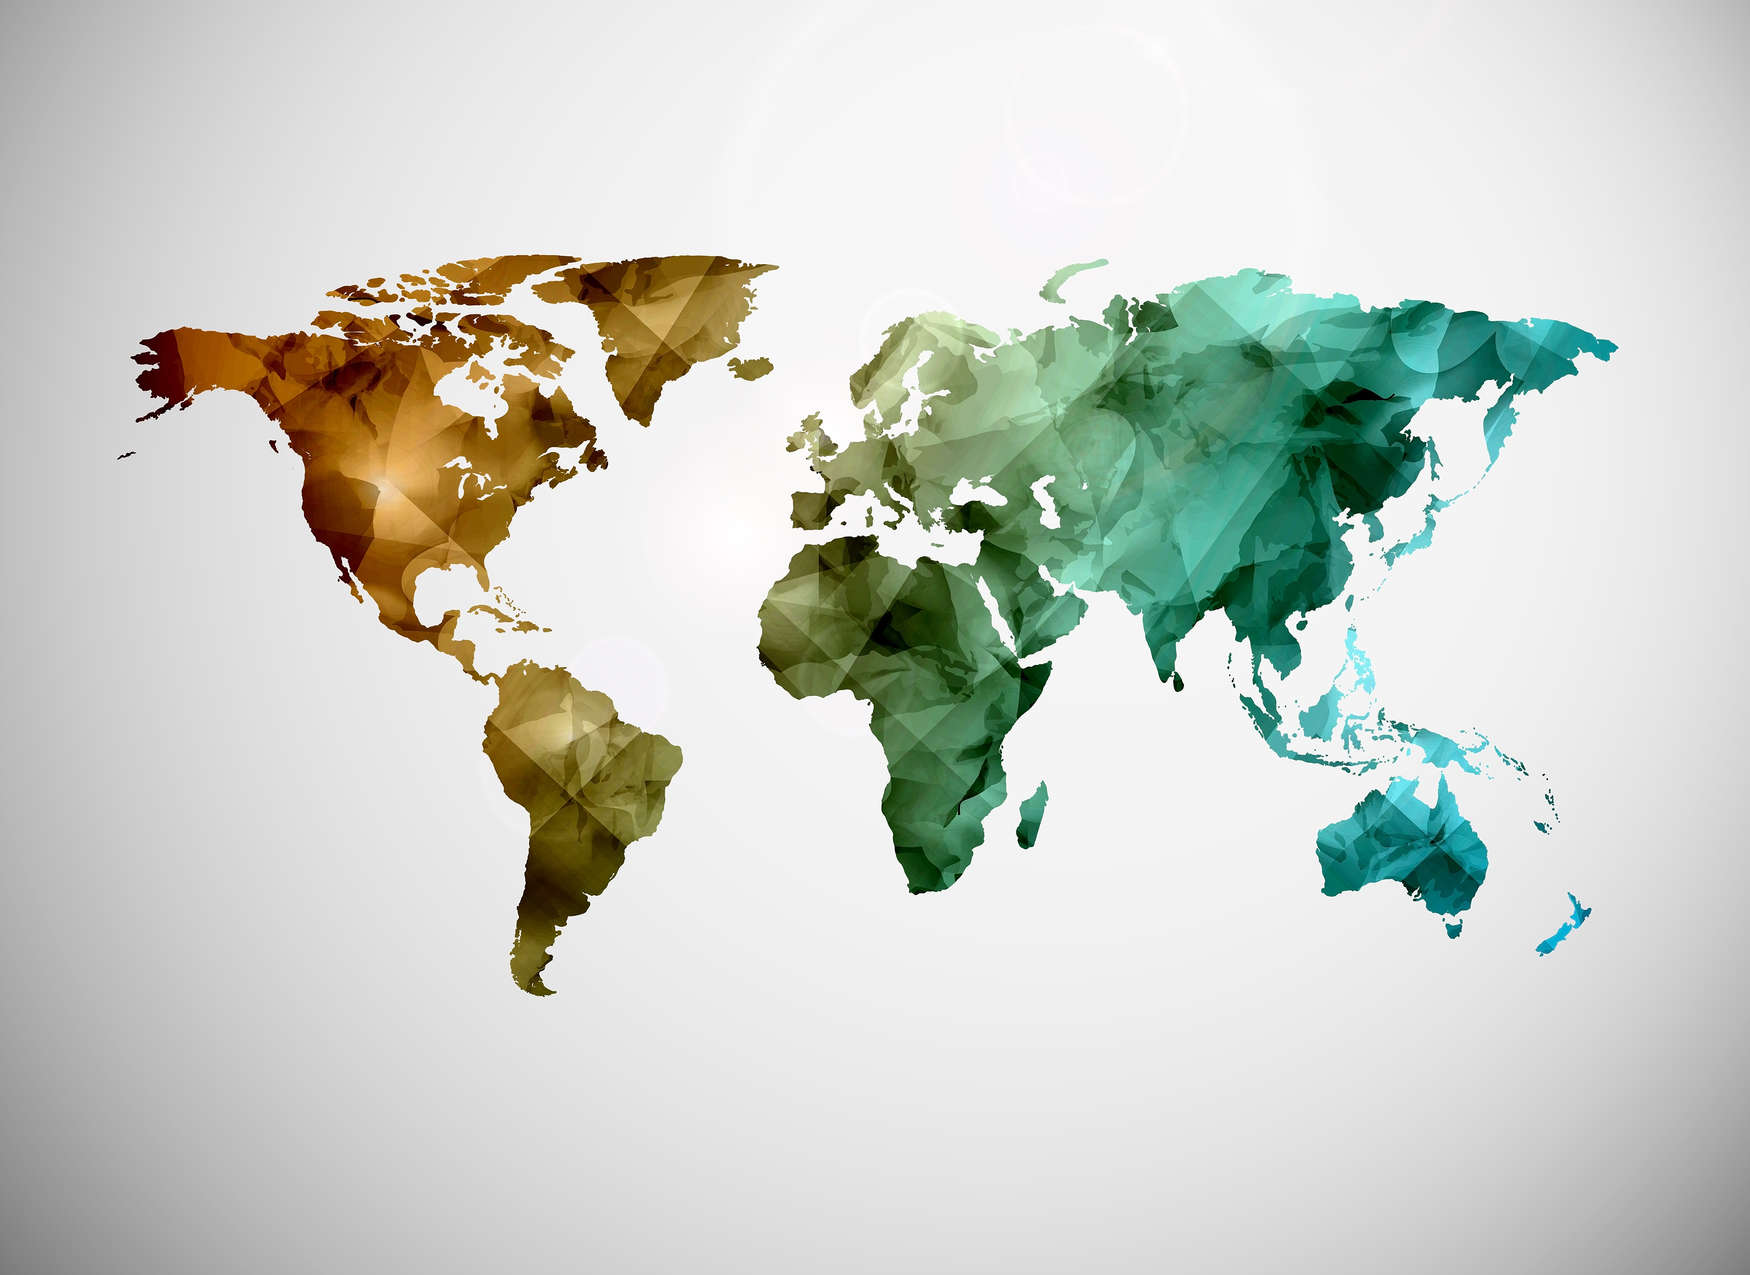             Carte du monde en éléments graphiques - Multicolore, blanc
        